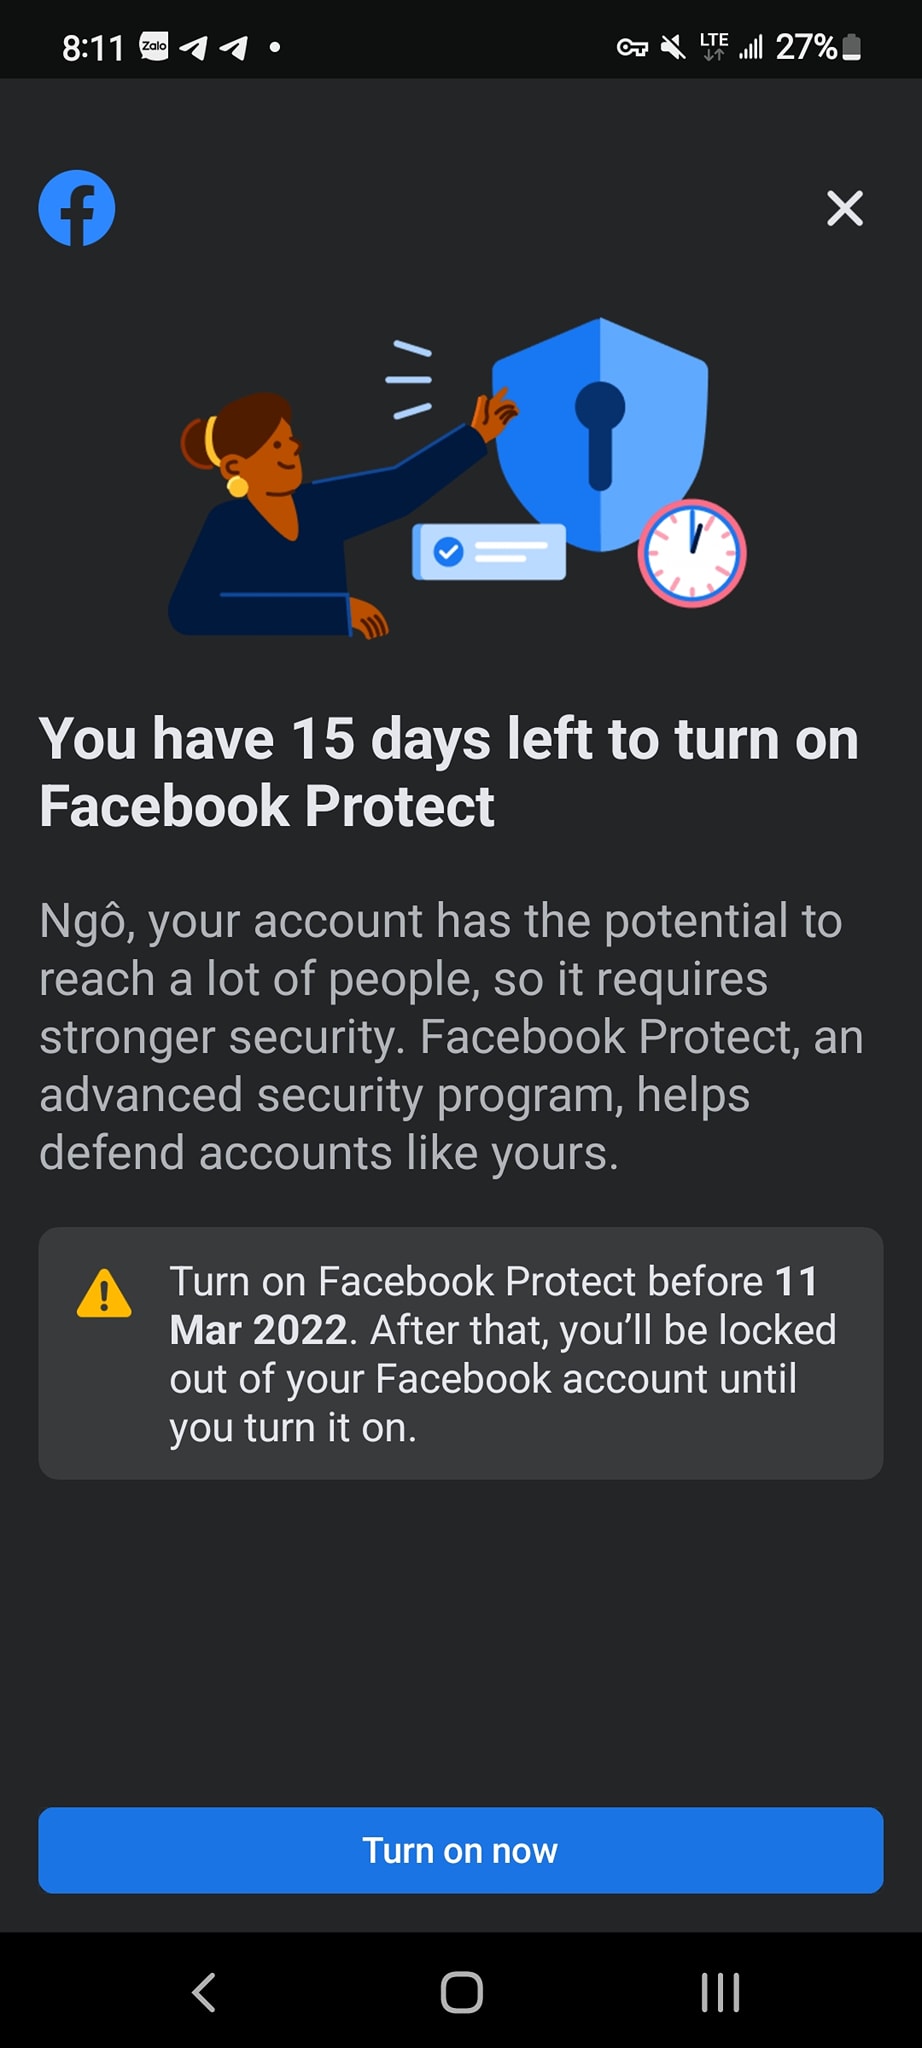 Hiếu PC giới thiệu tính năng bảo vệ mới của Facebook dành cho tài khoản VIP, nhưng nếu không đủ VIP thì đây là mẹo để bạn đua theo! - Ảnh 3.